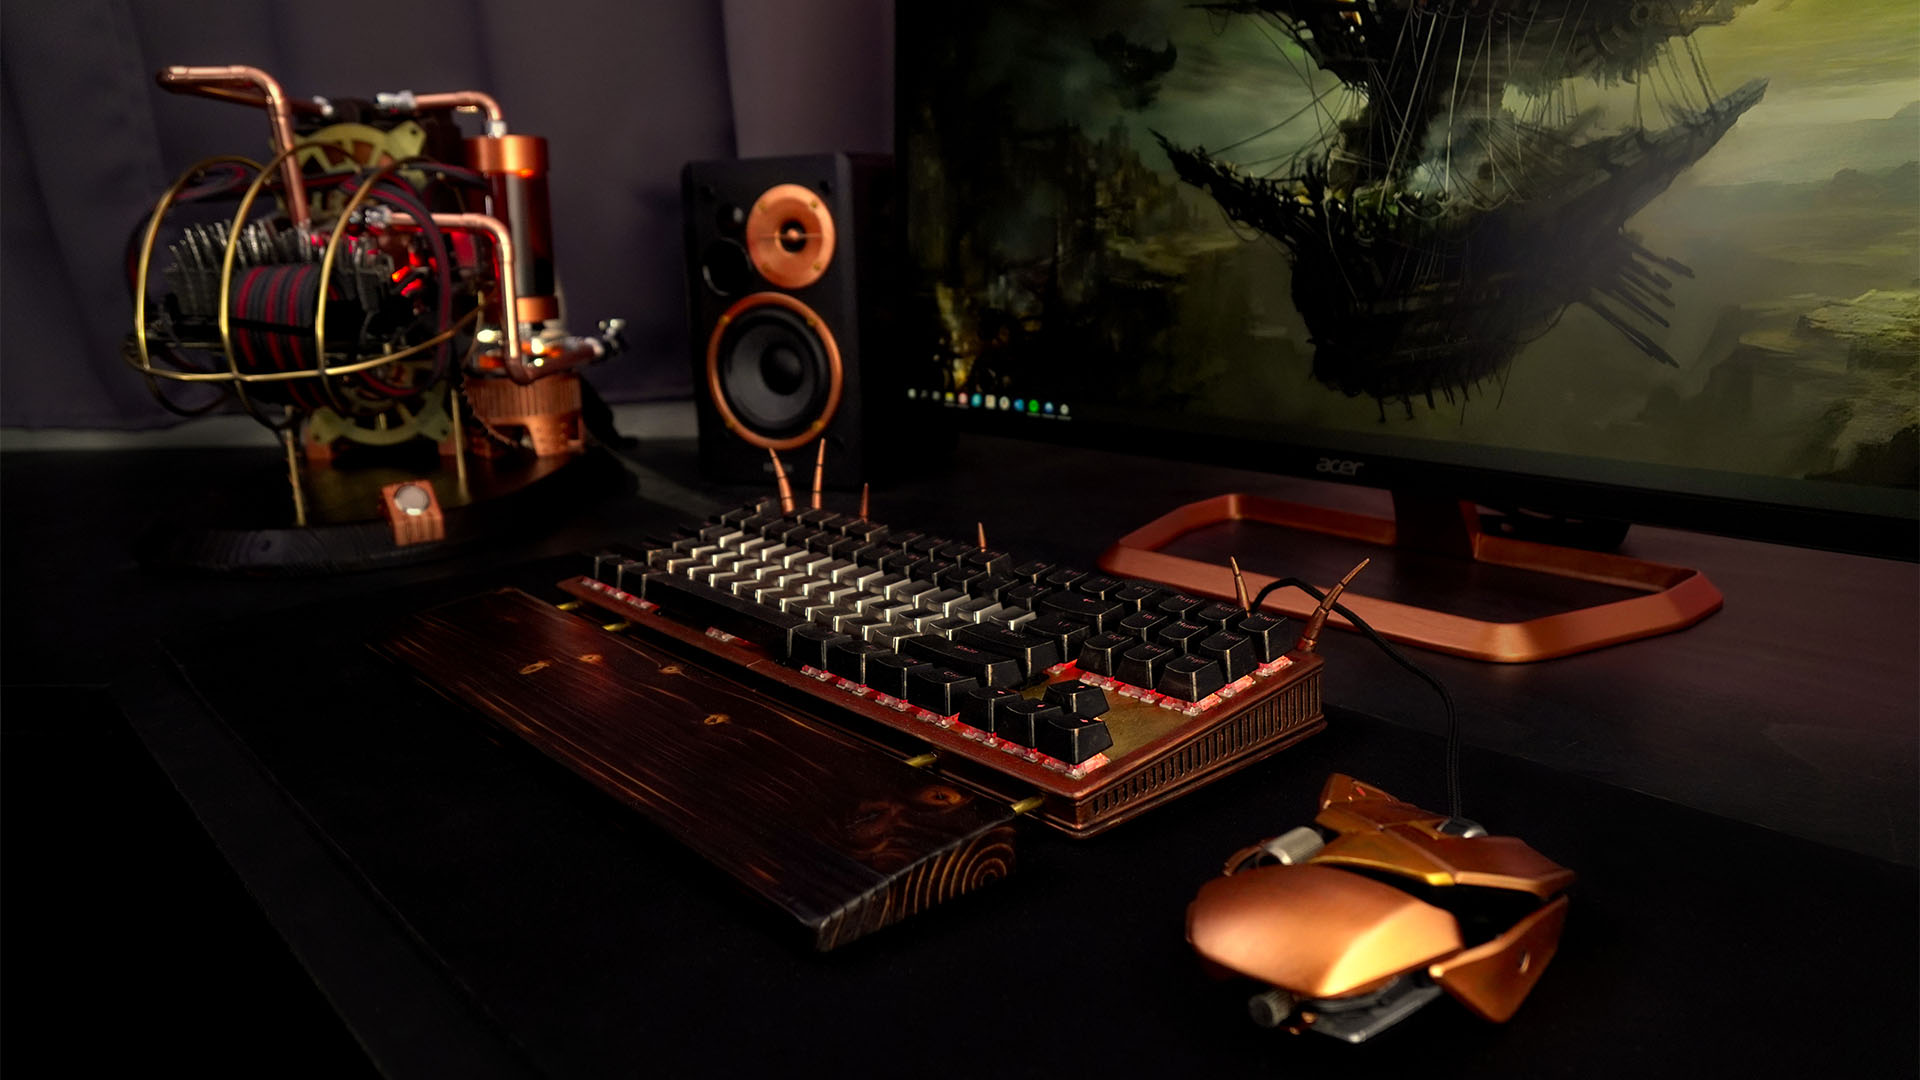 Le PC steampunk construit avec un moniteur et un clavier personnalisé